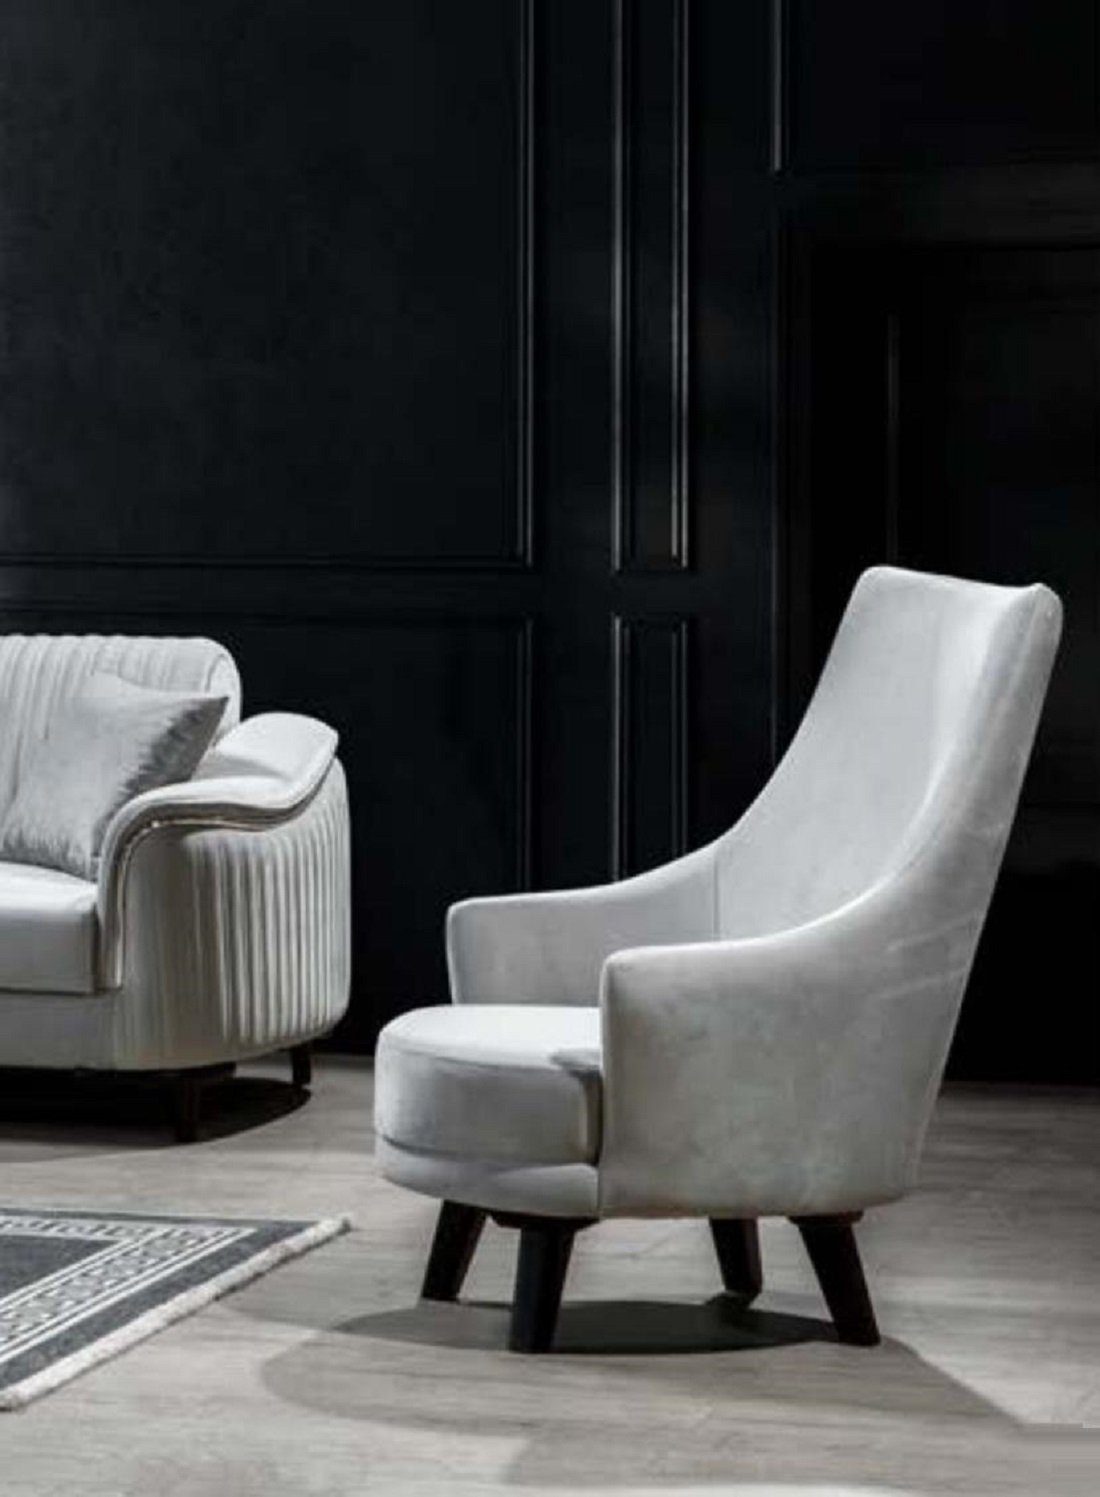 JVmoebel Sofa Luxus Garnitur Sofagarnitur Sitzer in Europe 3+3+1 Sofas Sessel, Set Made